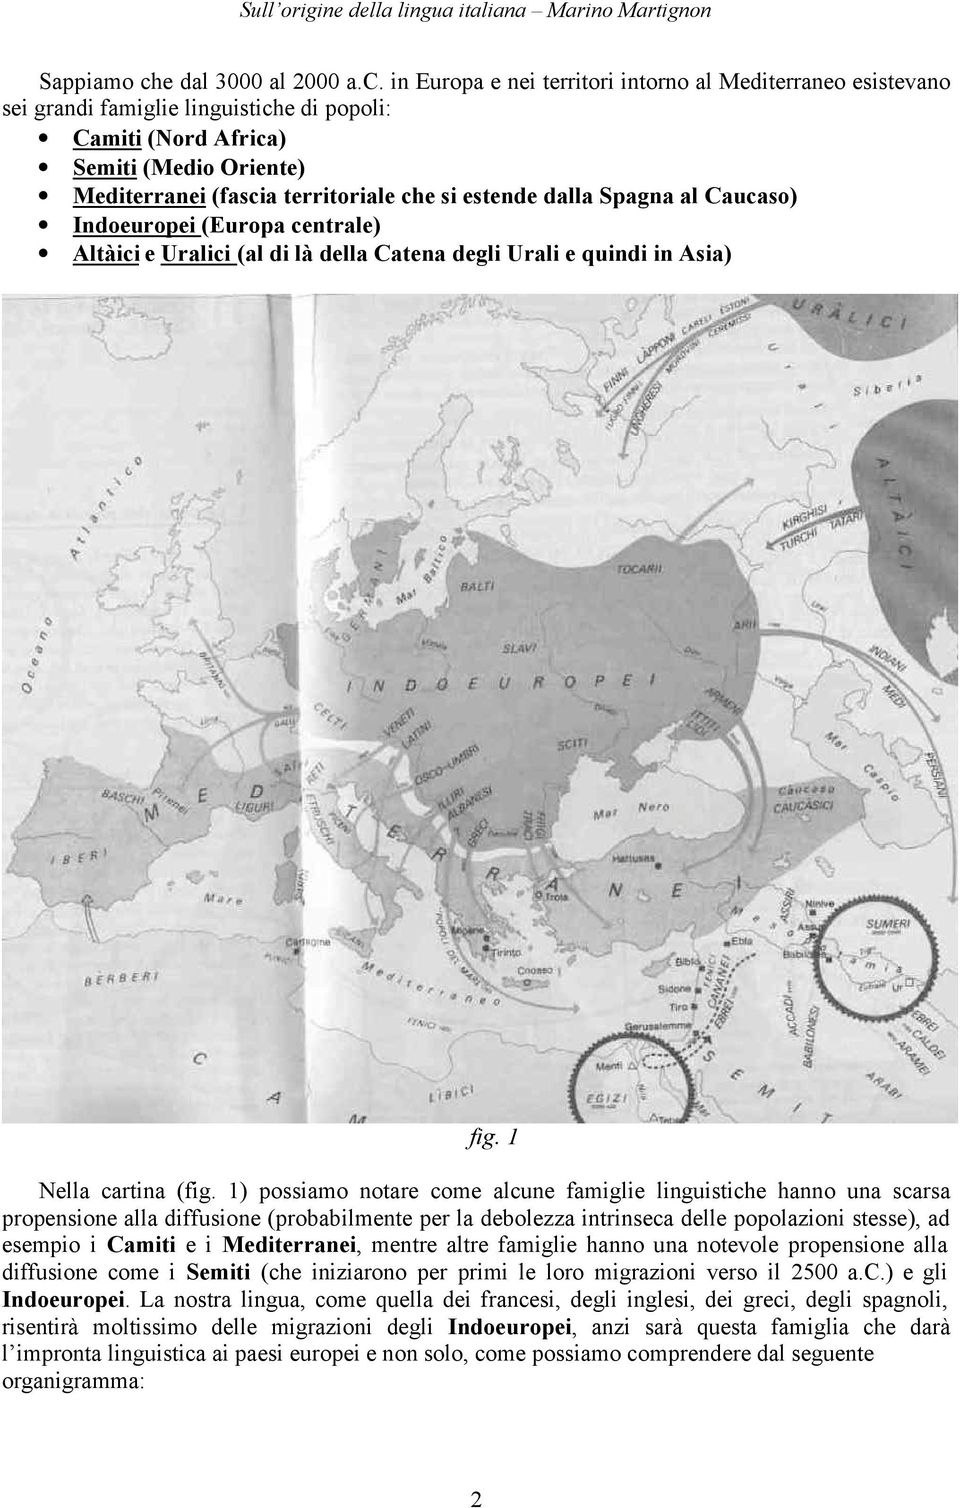 in Europa e nei territori intorno al Mediterraneo esistevano sei grandi famiglie linguistiche di popoli: Camiti (Nord Africa) Semiti (Medio Oriente) Mediterranei (fascia territoriale che si estende